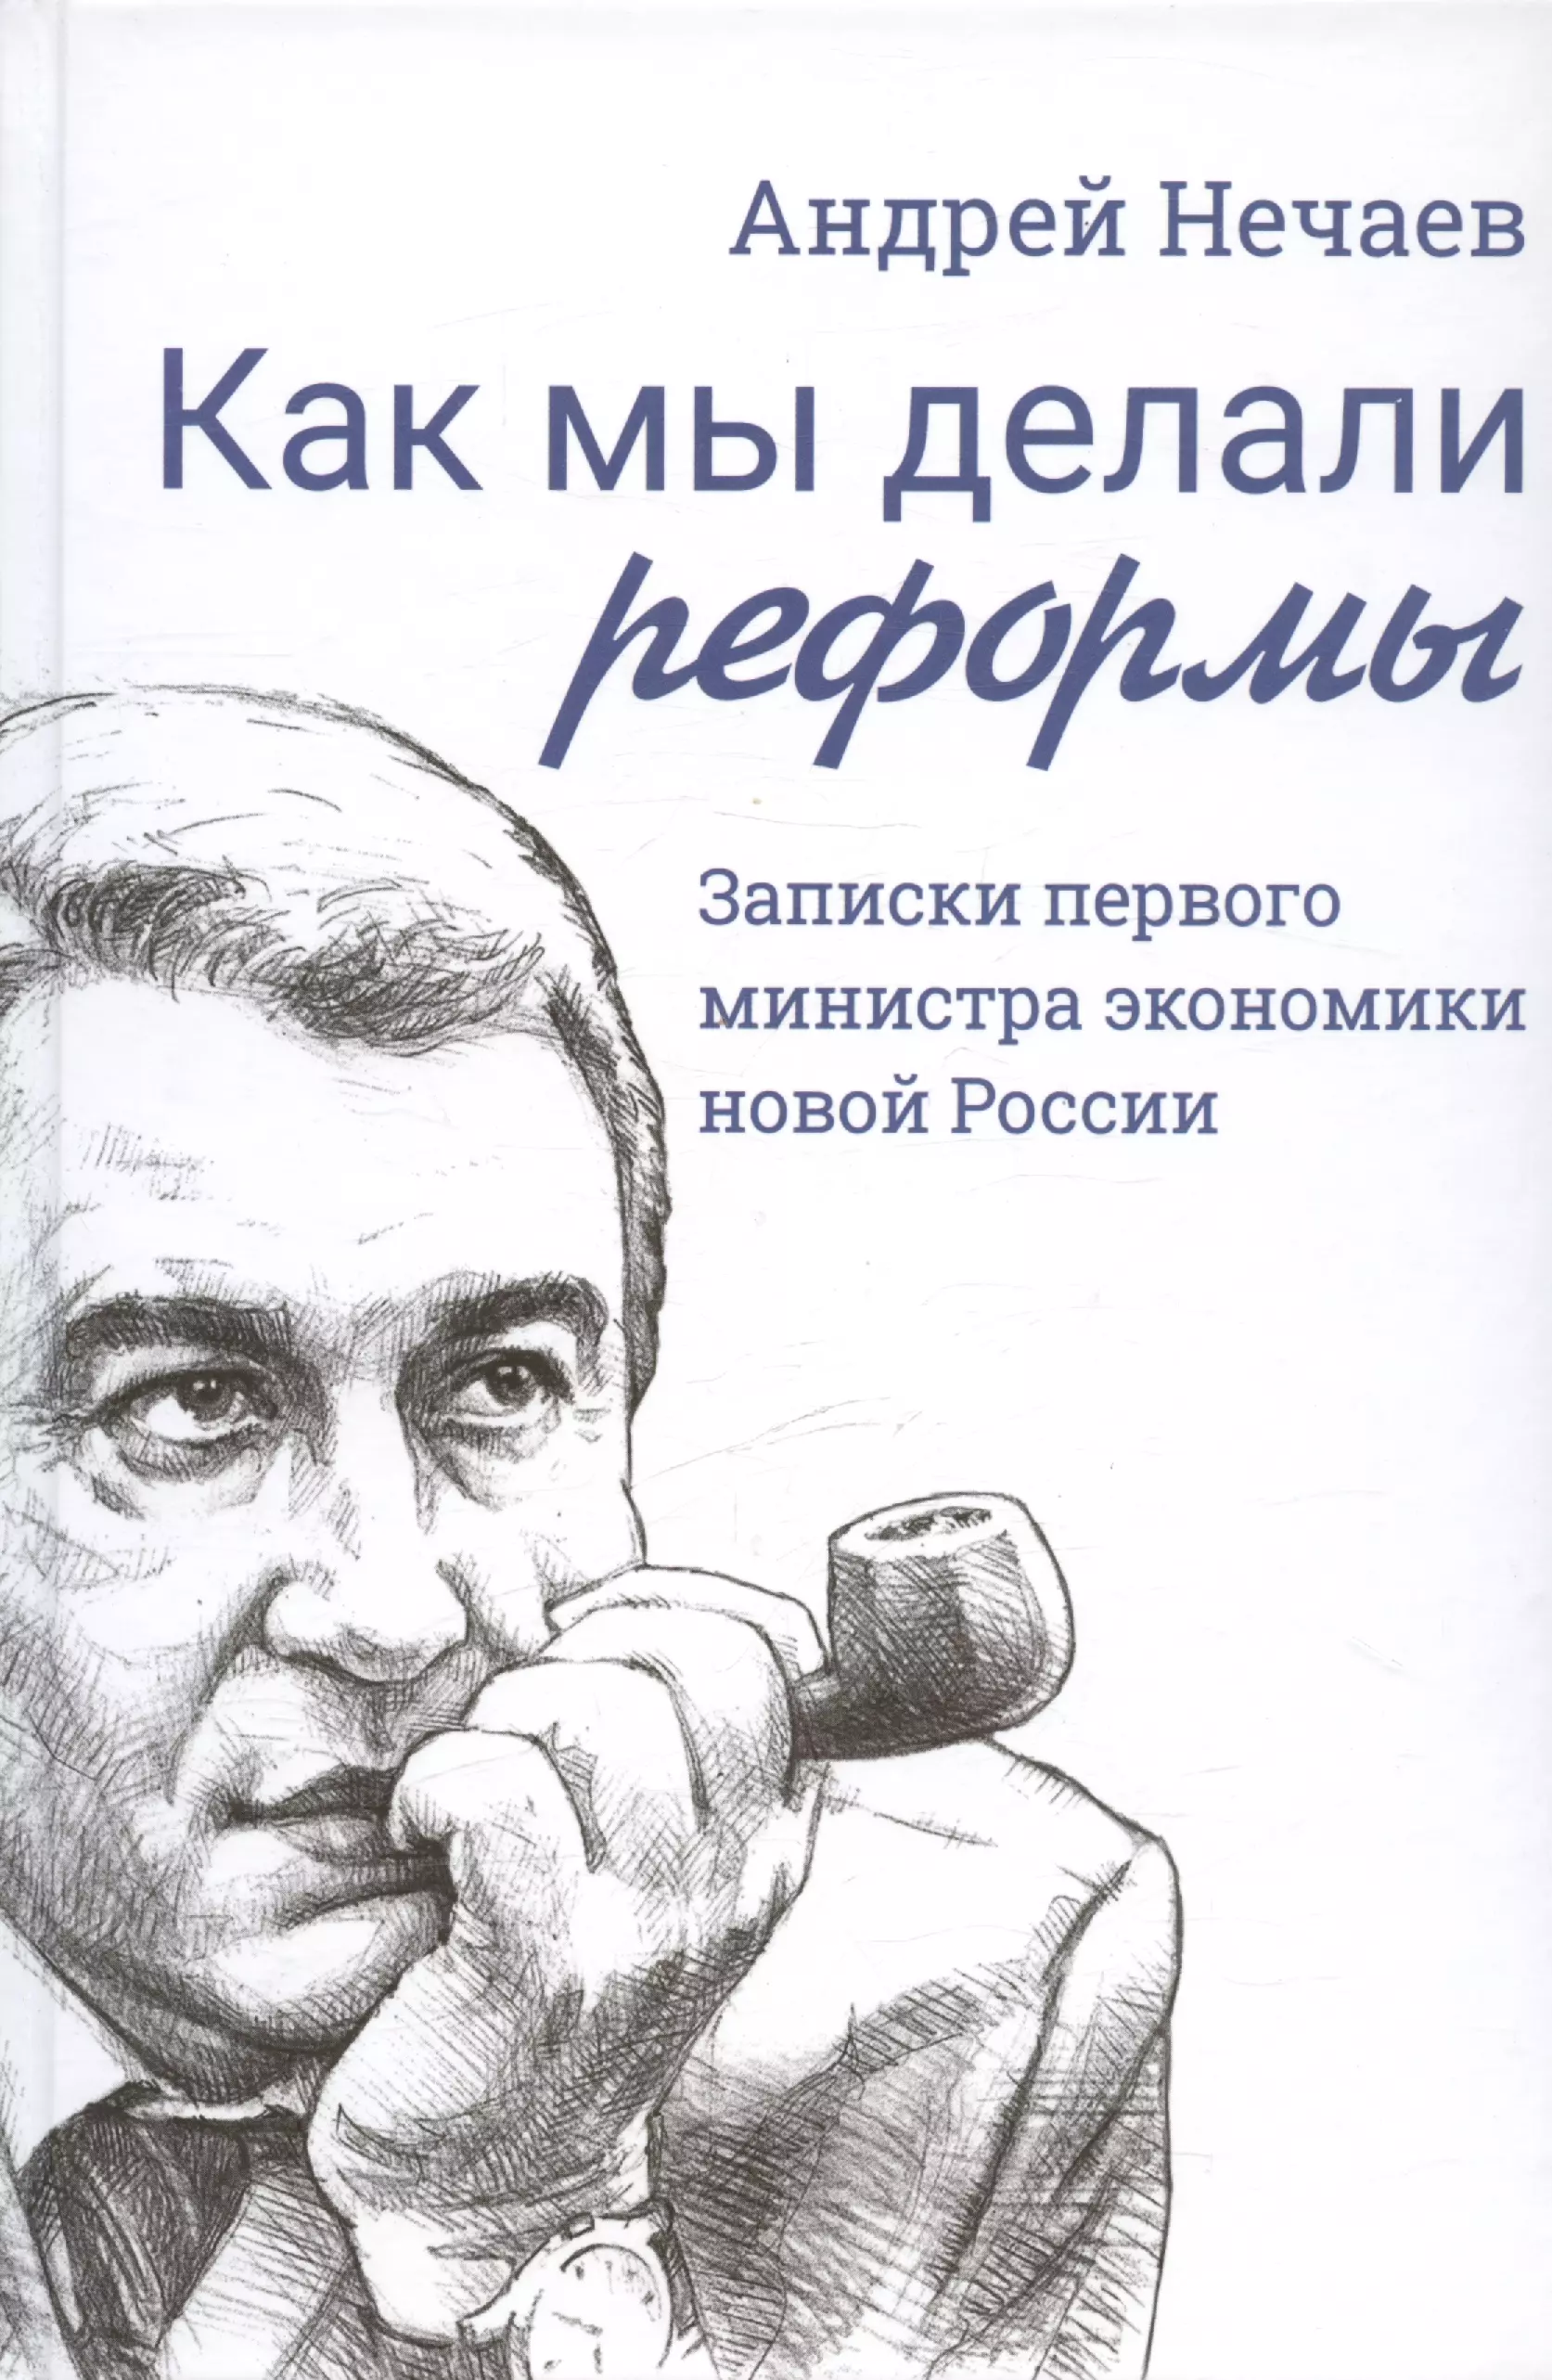 Как мы делали реформы: записки первого министра экономики новой России